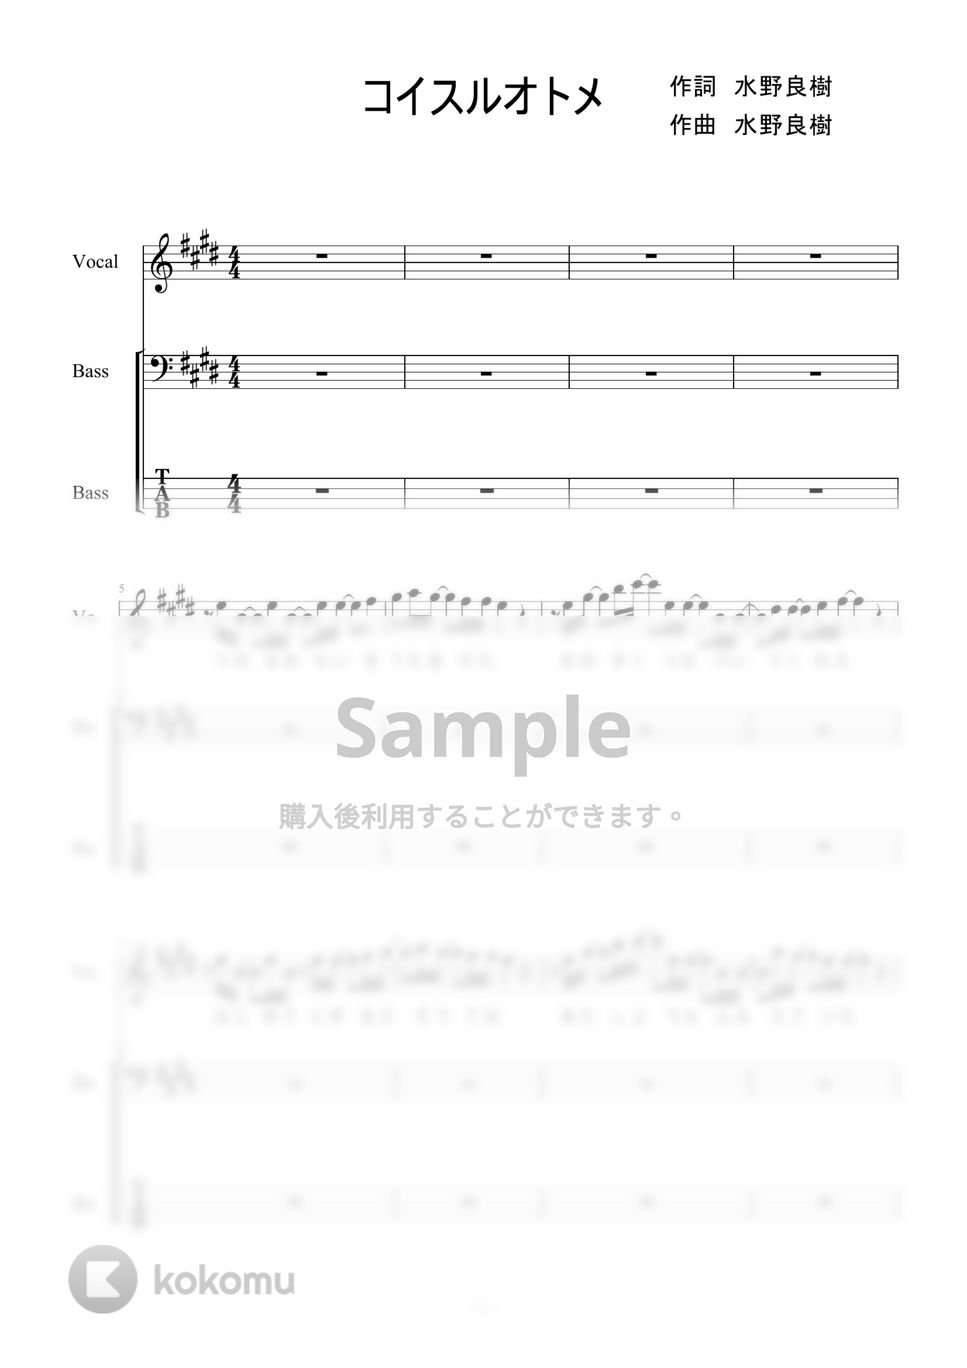 いきものがかり - コイスルオトメ (ベース) by 二次元楽譜製作所